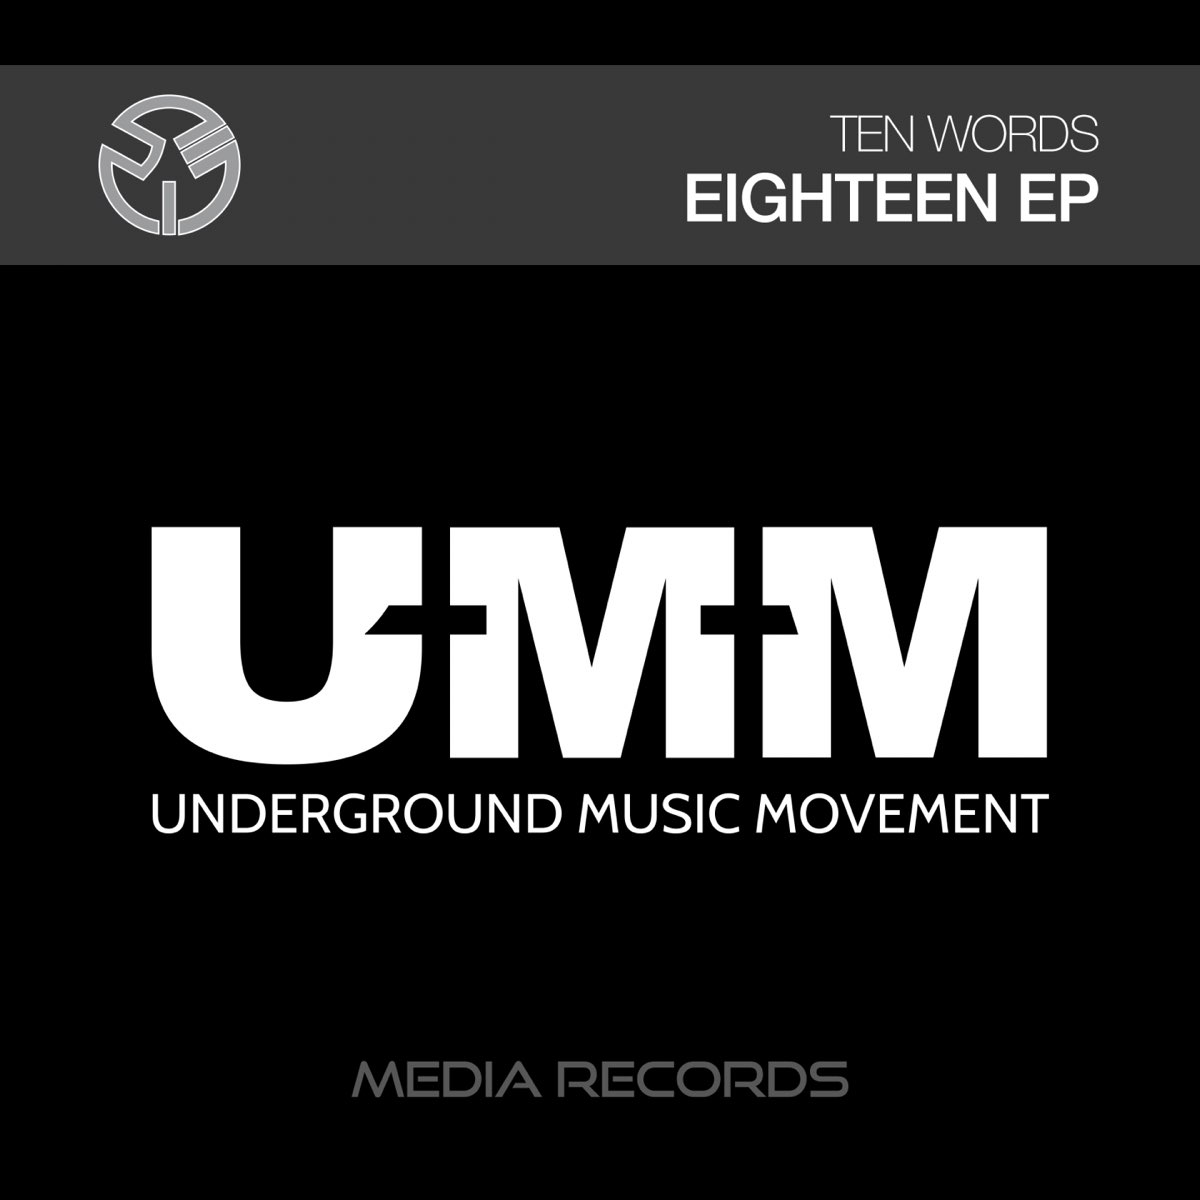 Хочу 18 feat. Кофта Underground Music Movement. Remake слово. Модер токенг the decade Remixes мрз.